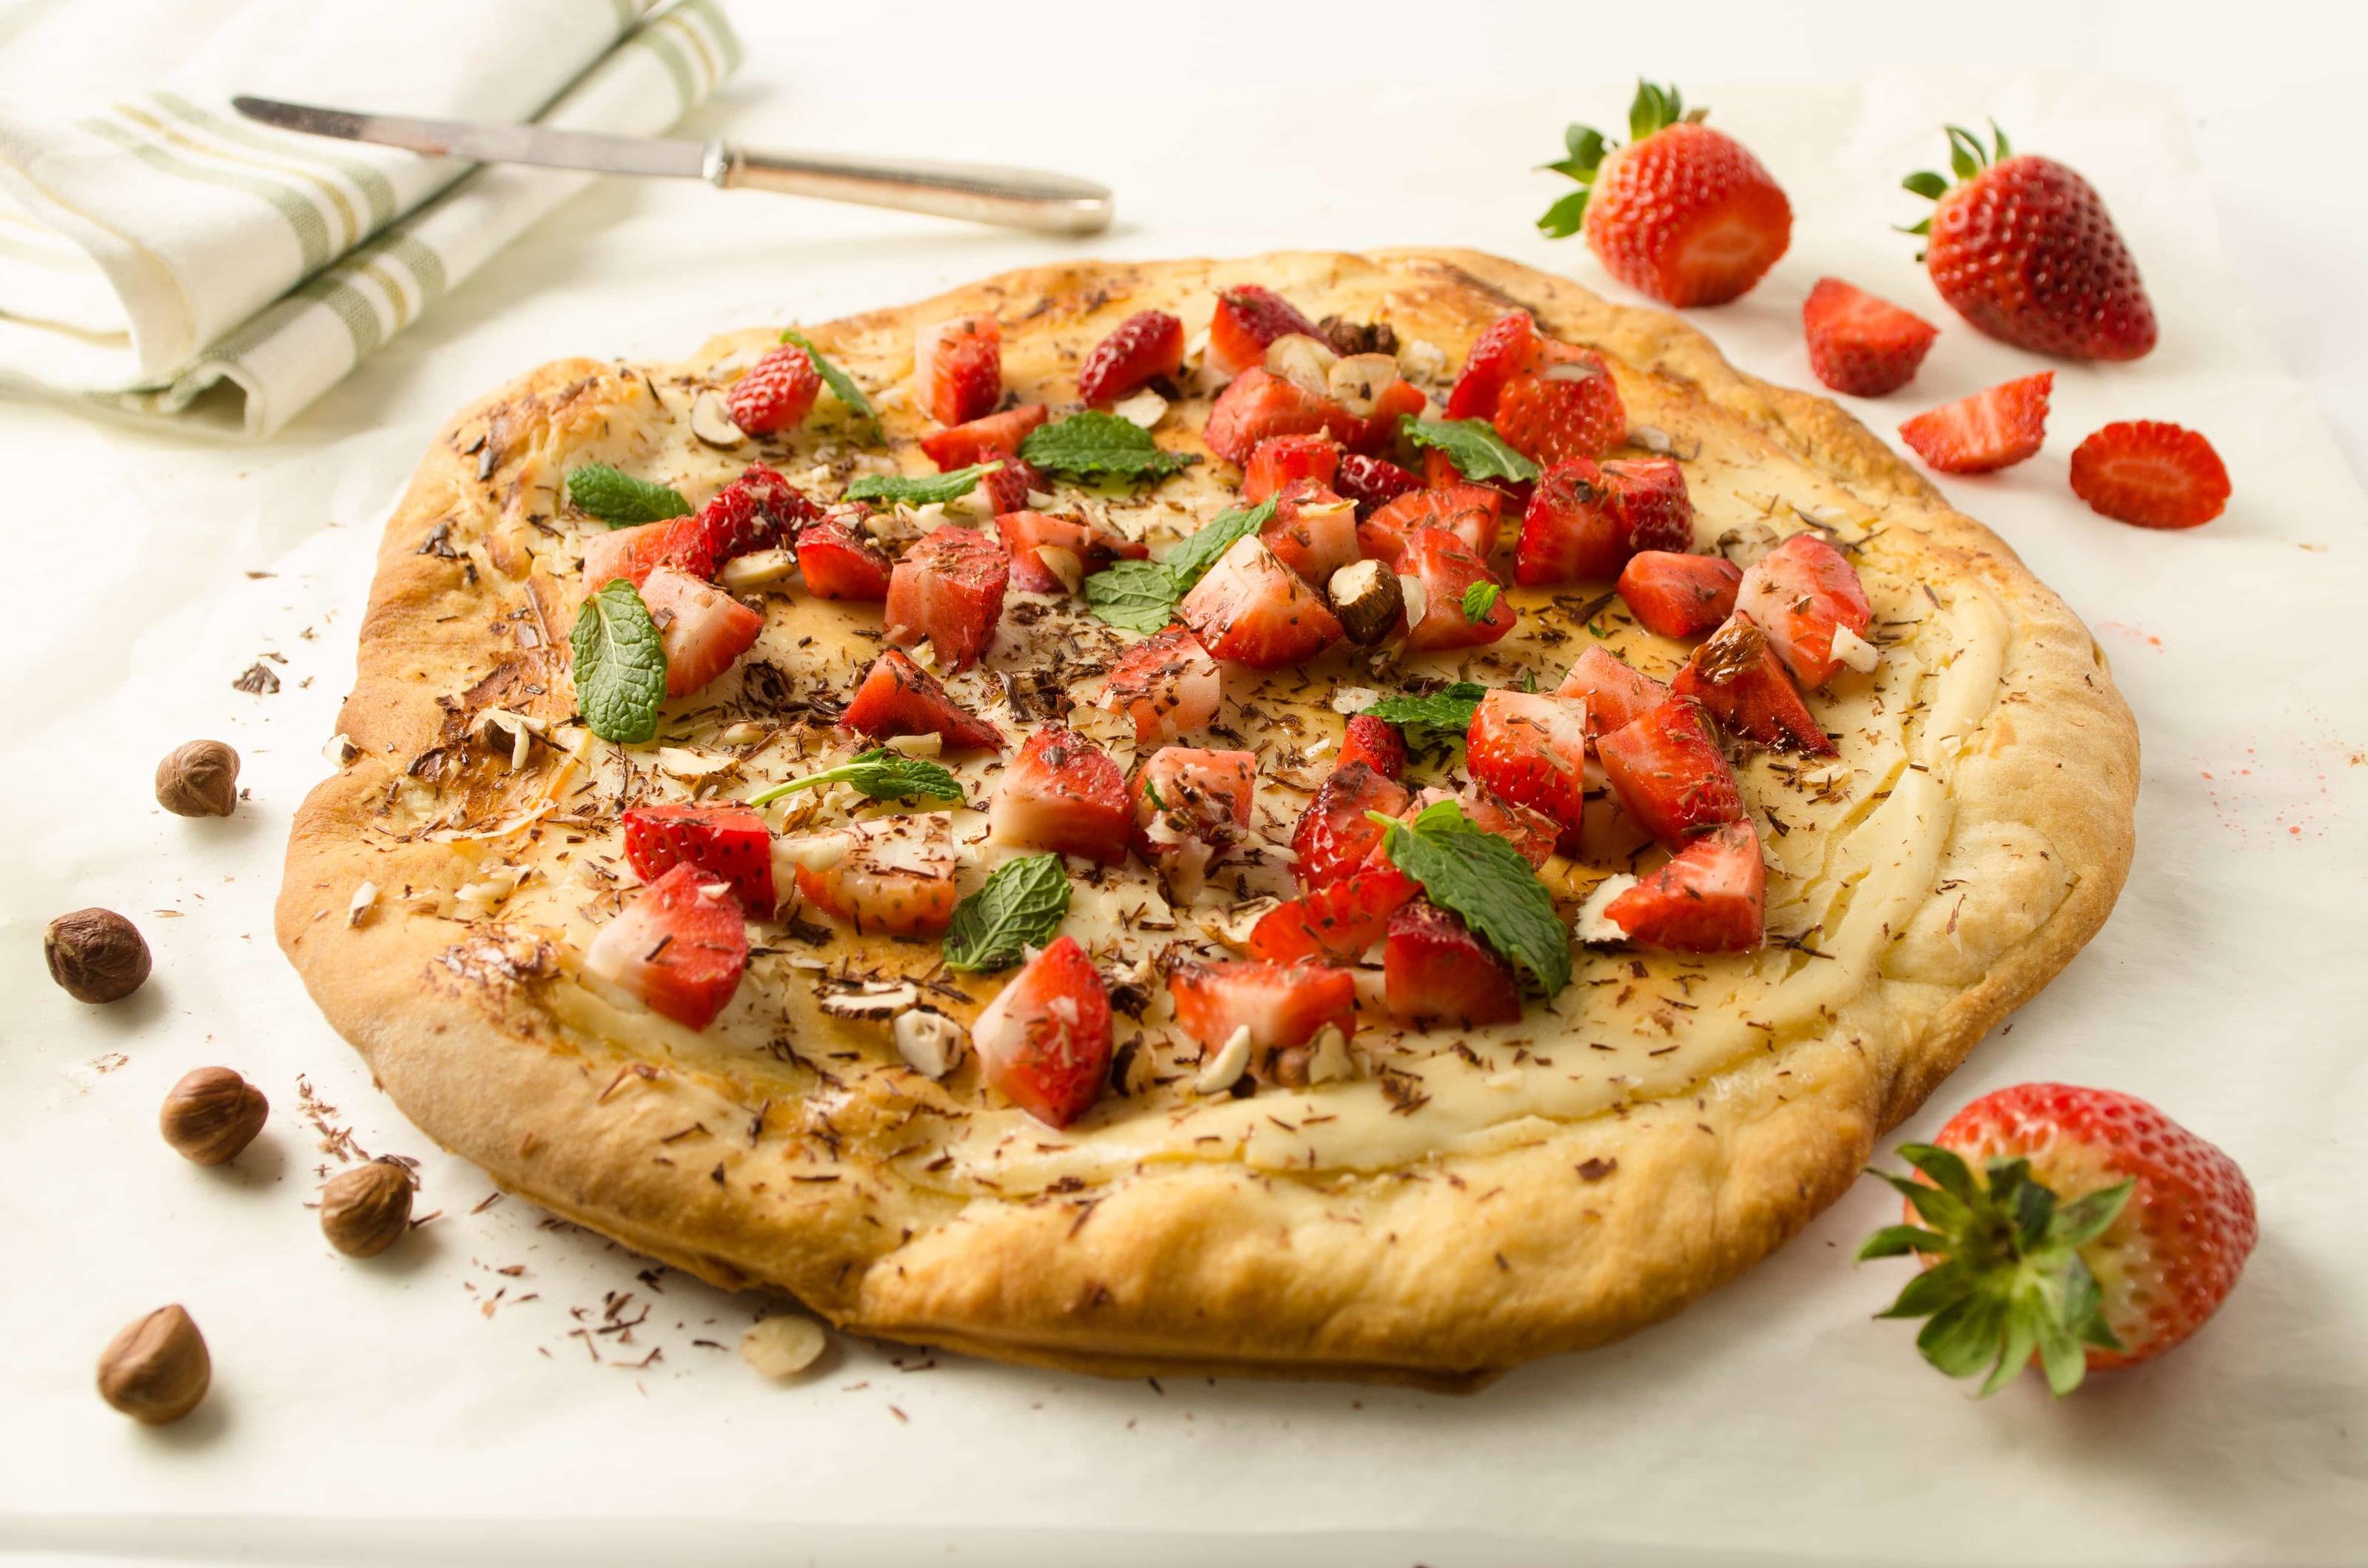 Süße Pizza mit Ricotta und Erdbeeren - Rezept